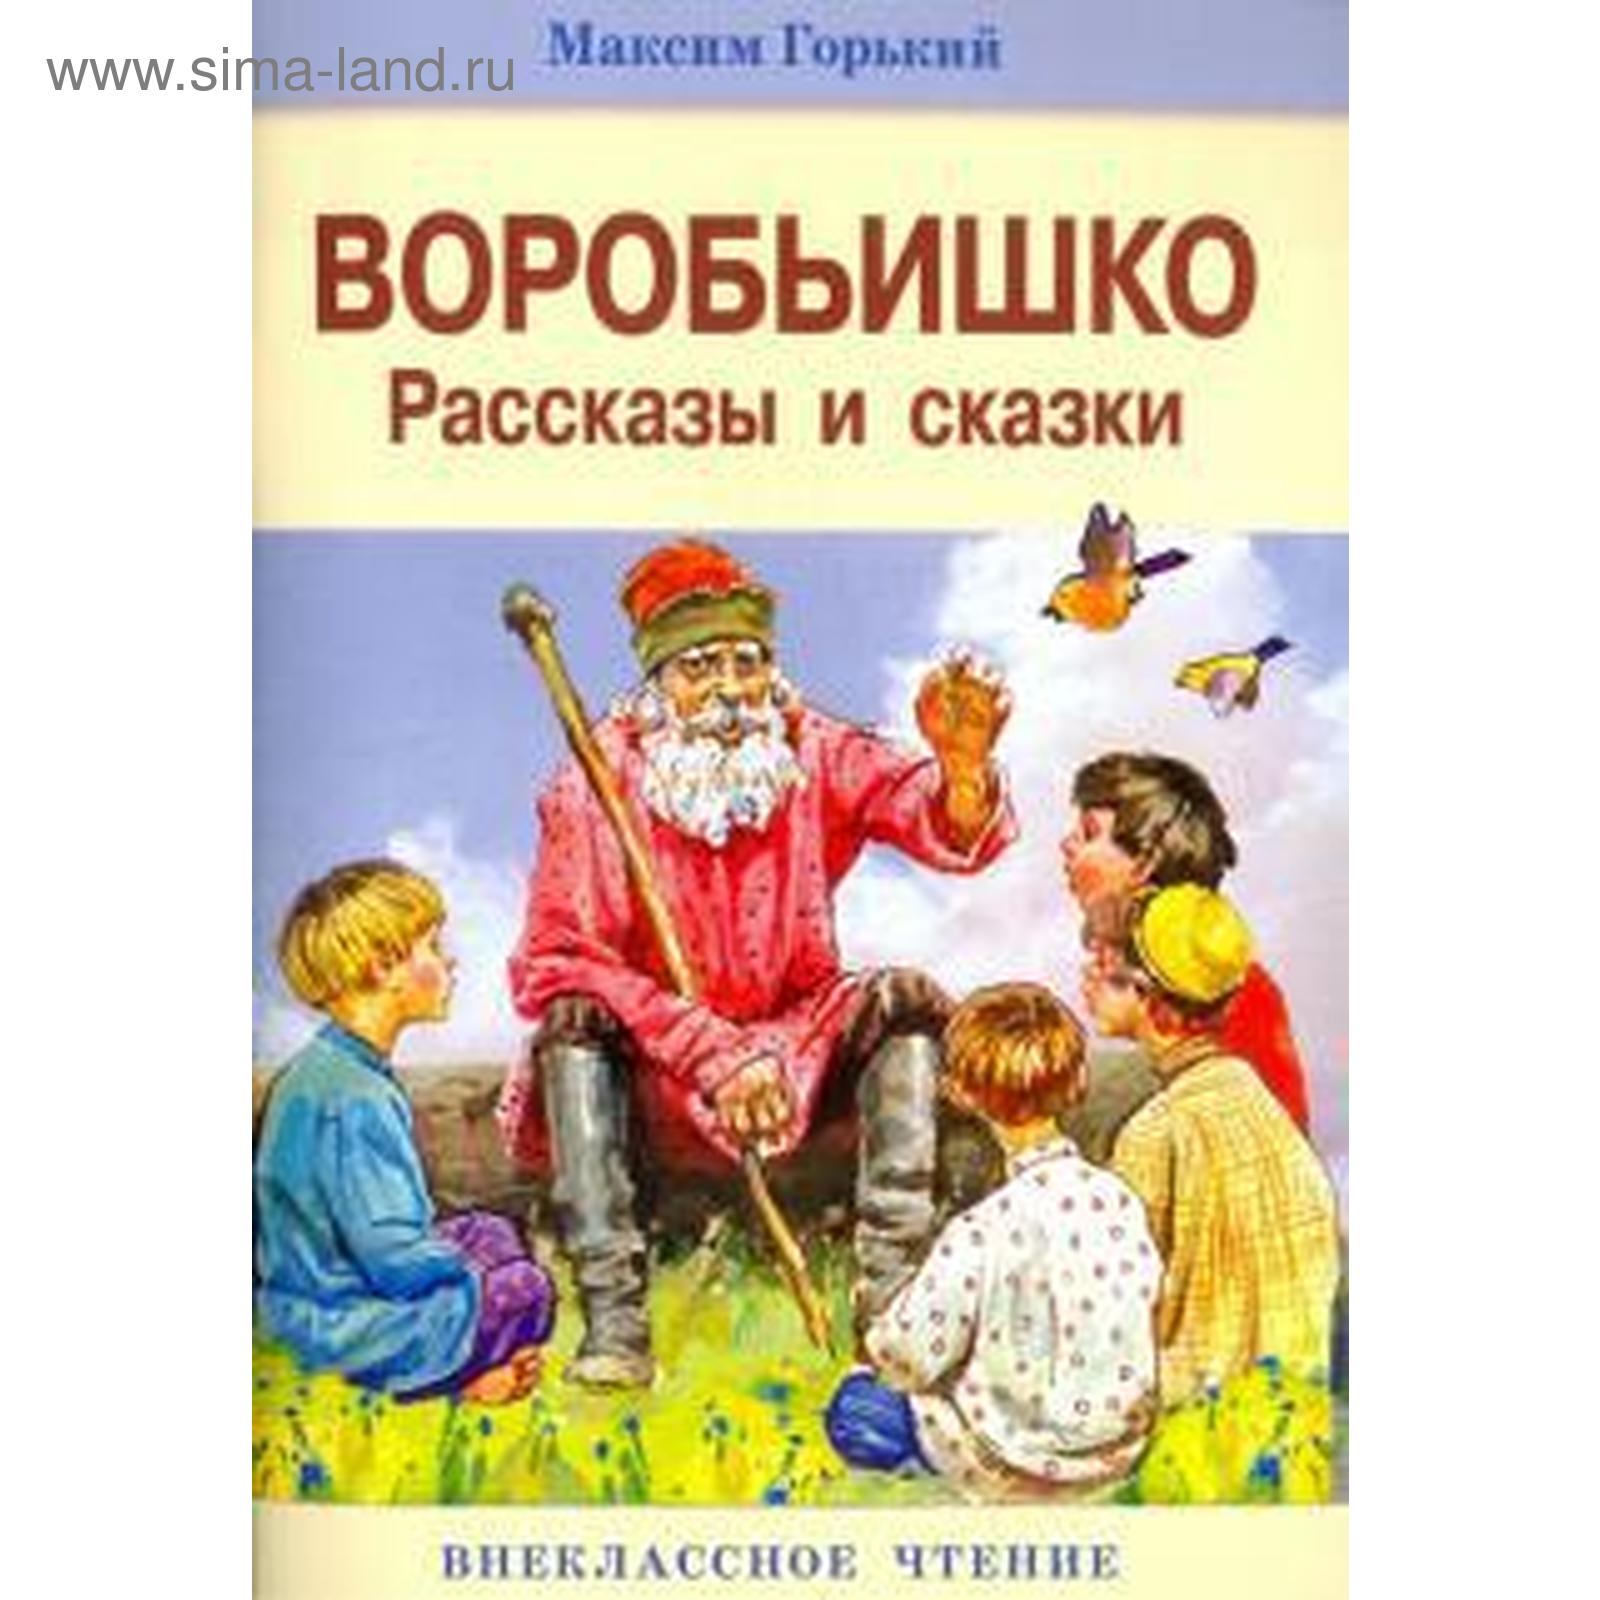 Произведения Максима Горького для детей